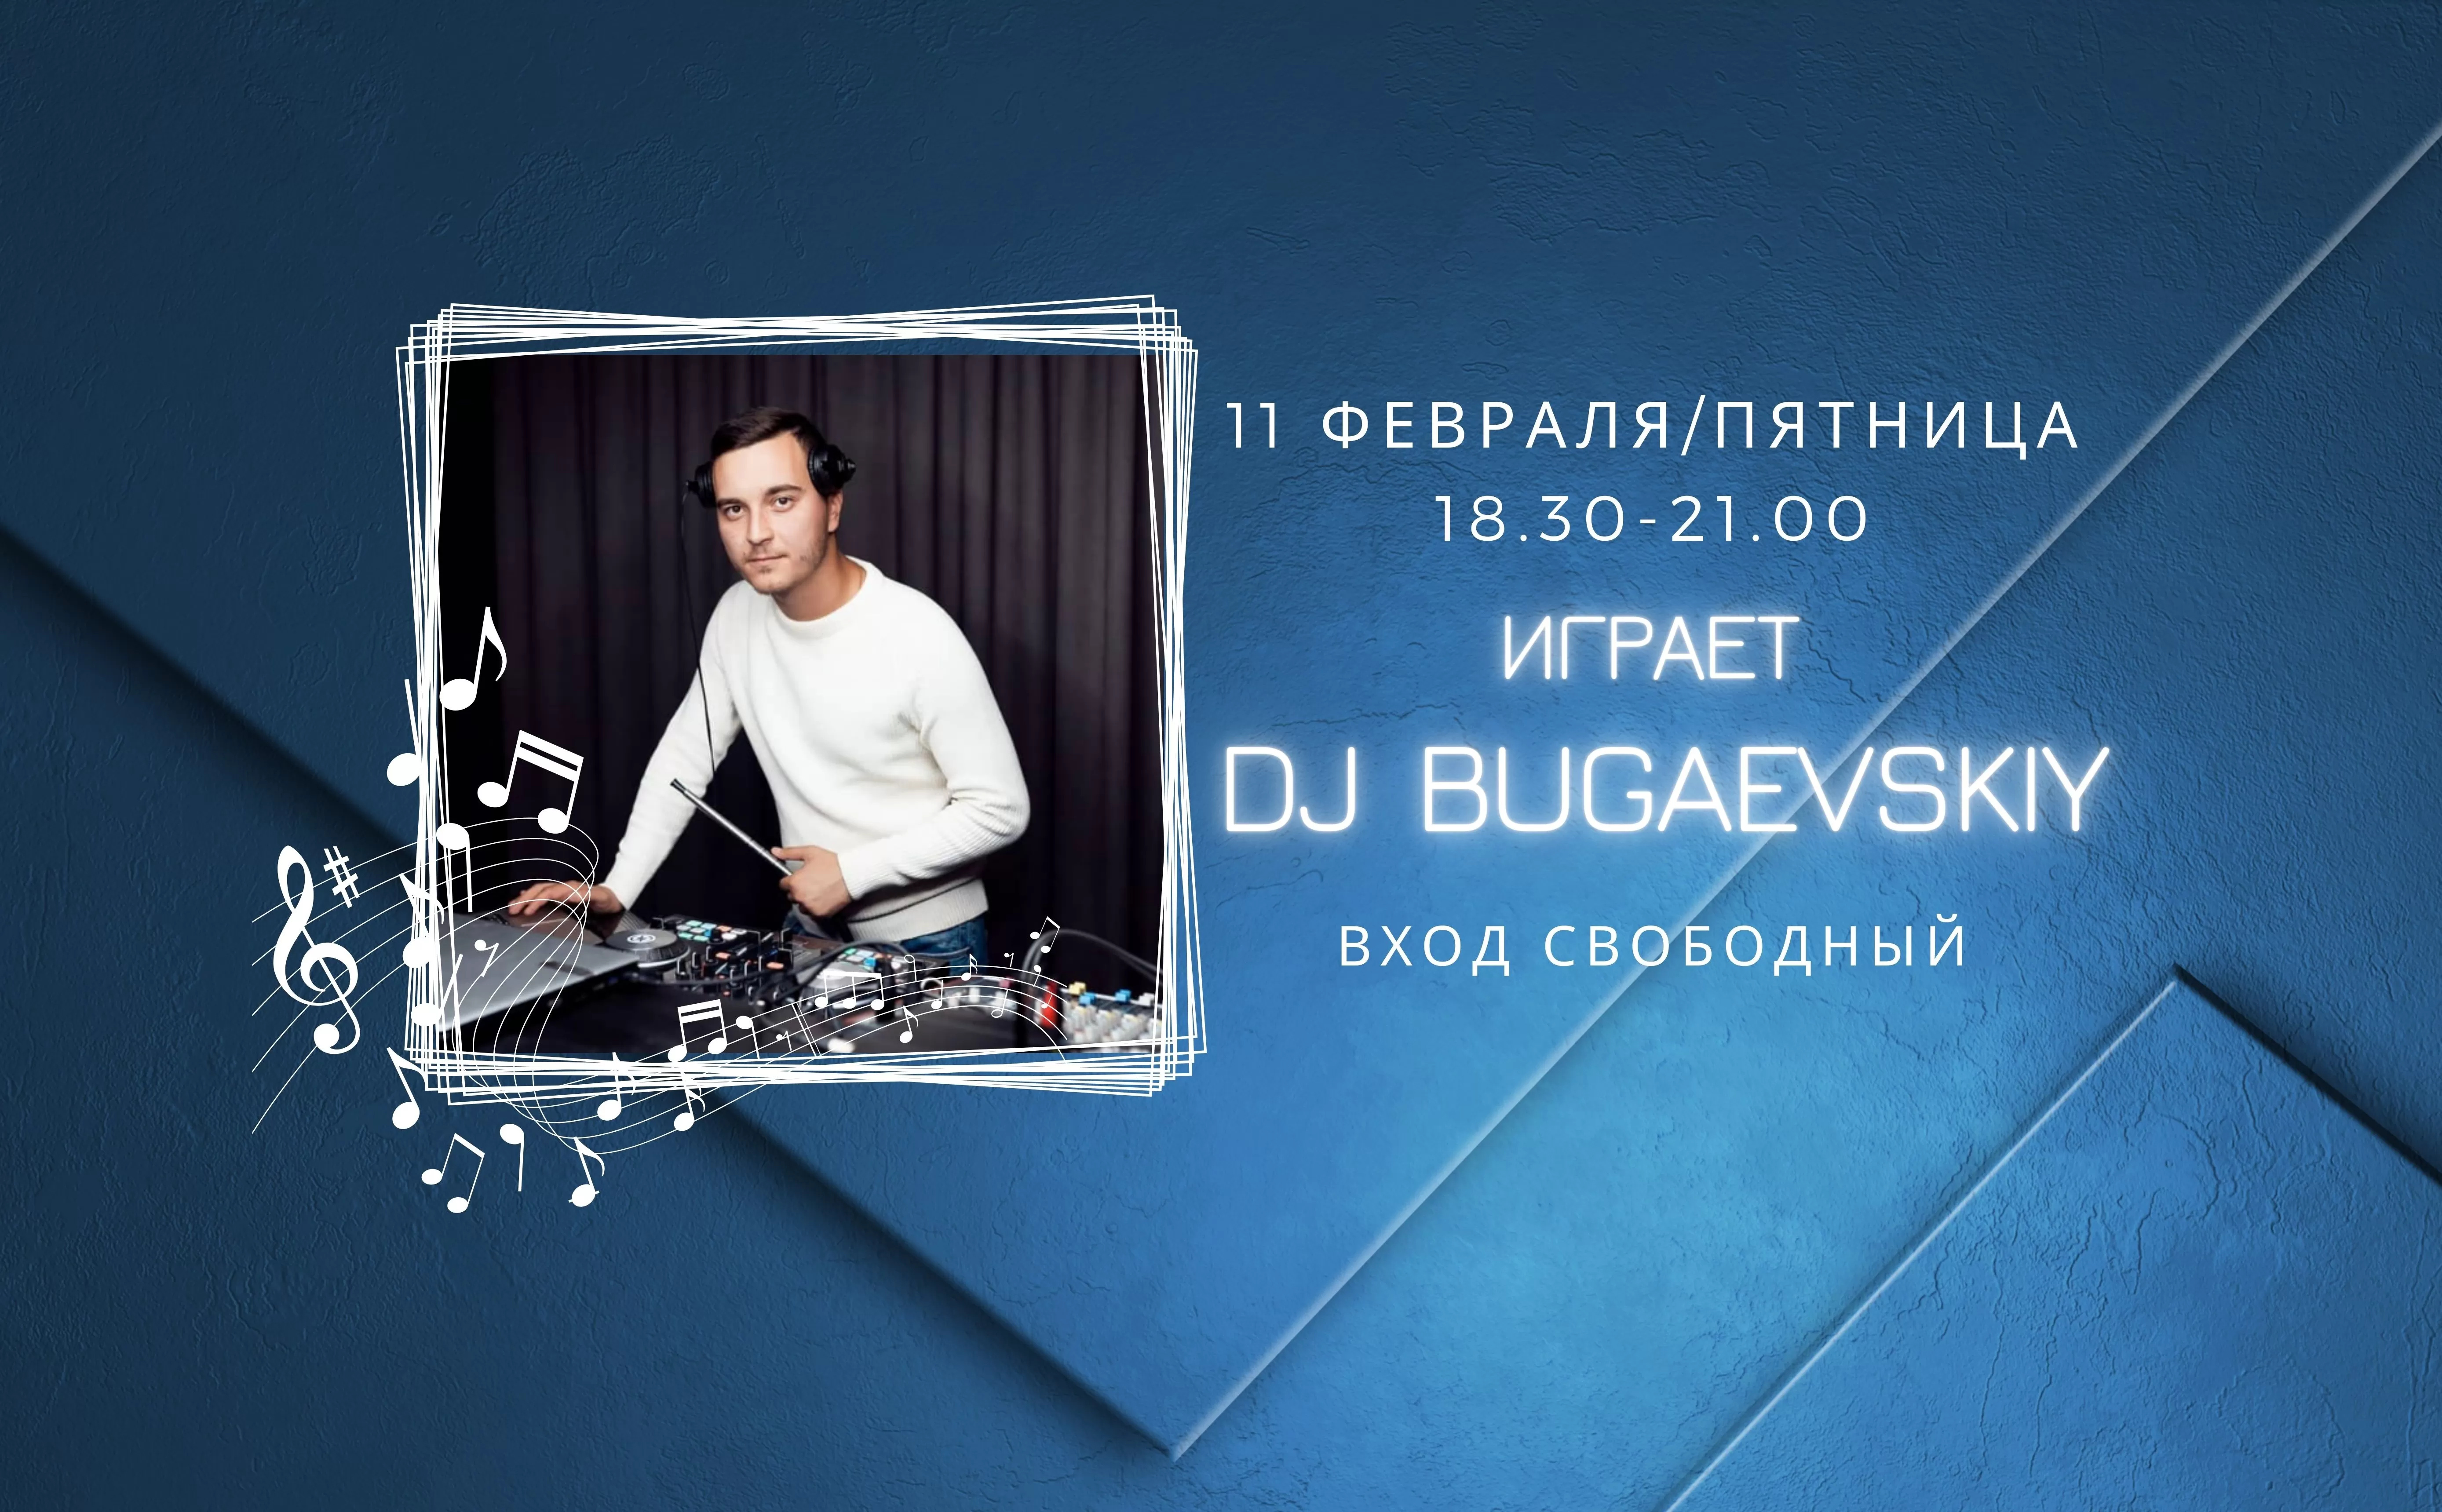 На сцене DJ Bugaevskiy